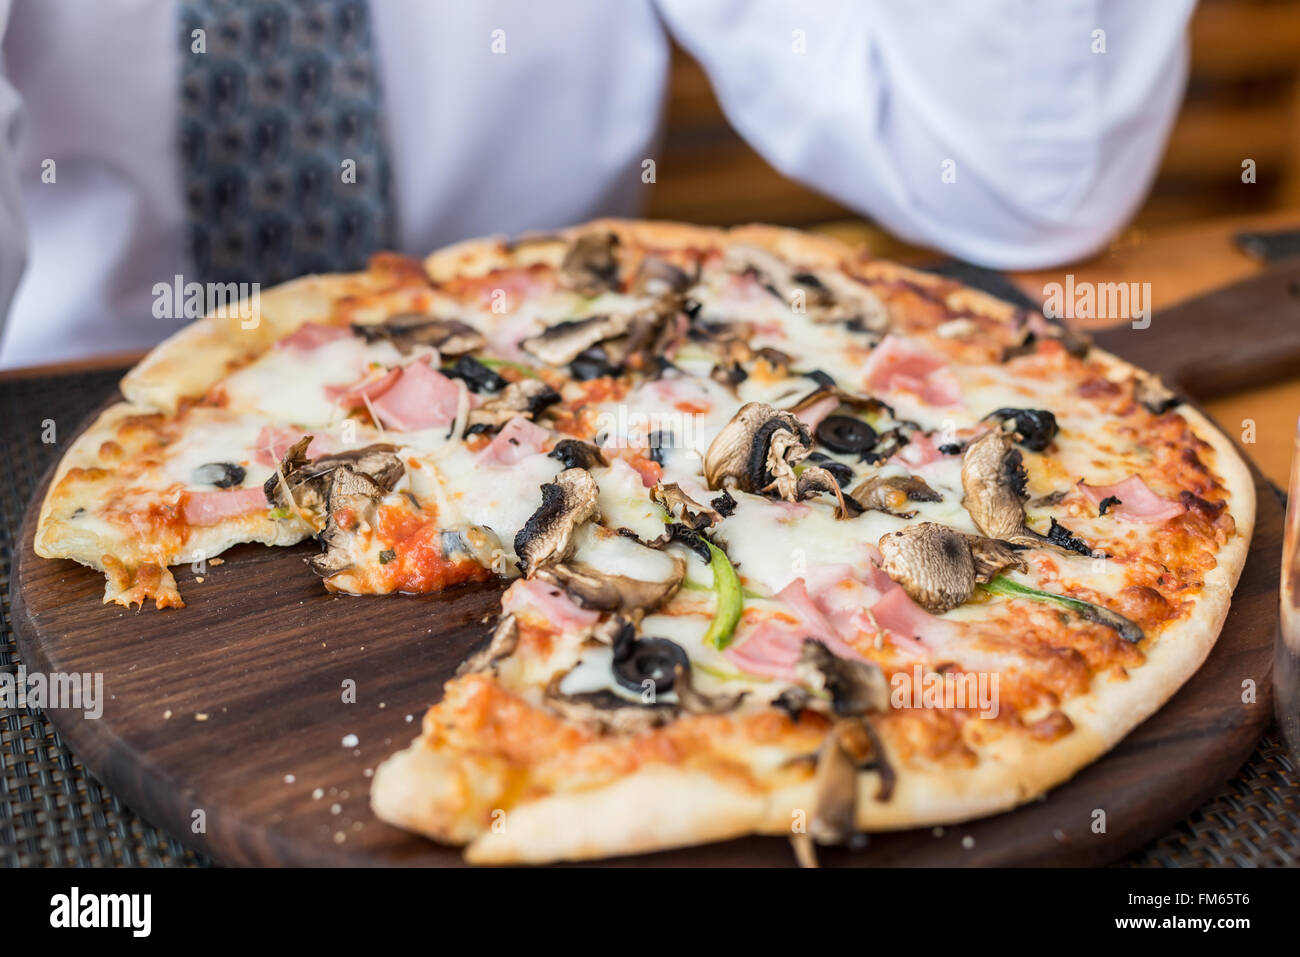 Pizza aux champignons sur table in restaurant Banque D'Images